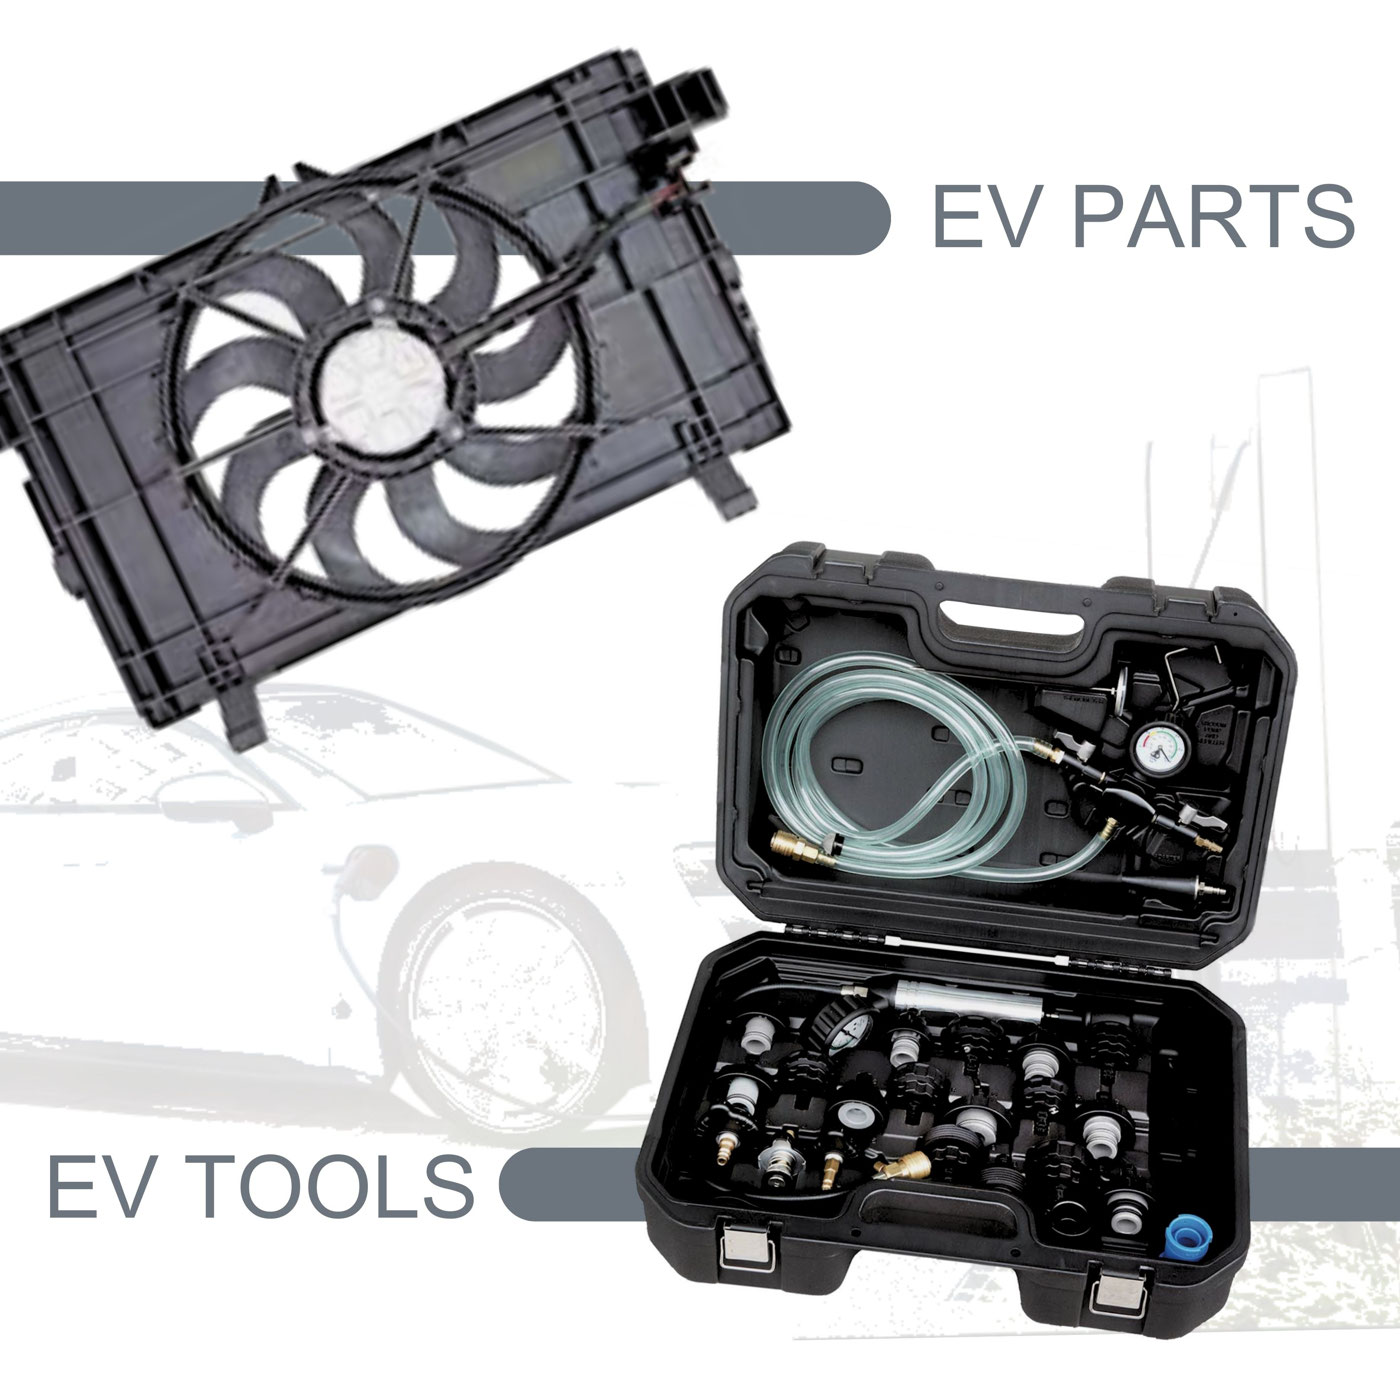 EV Parts and EV Tools